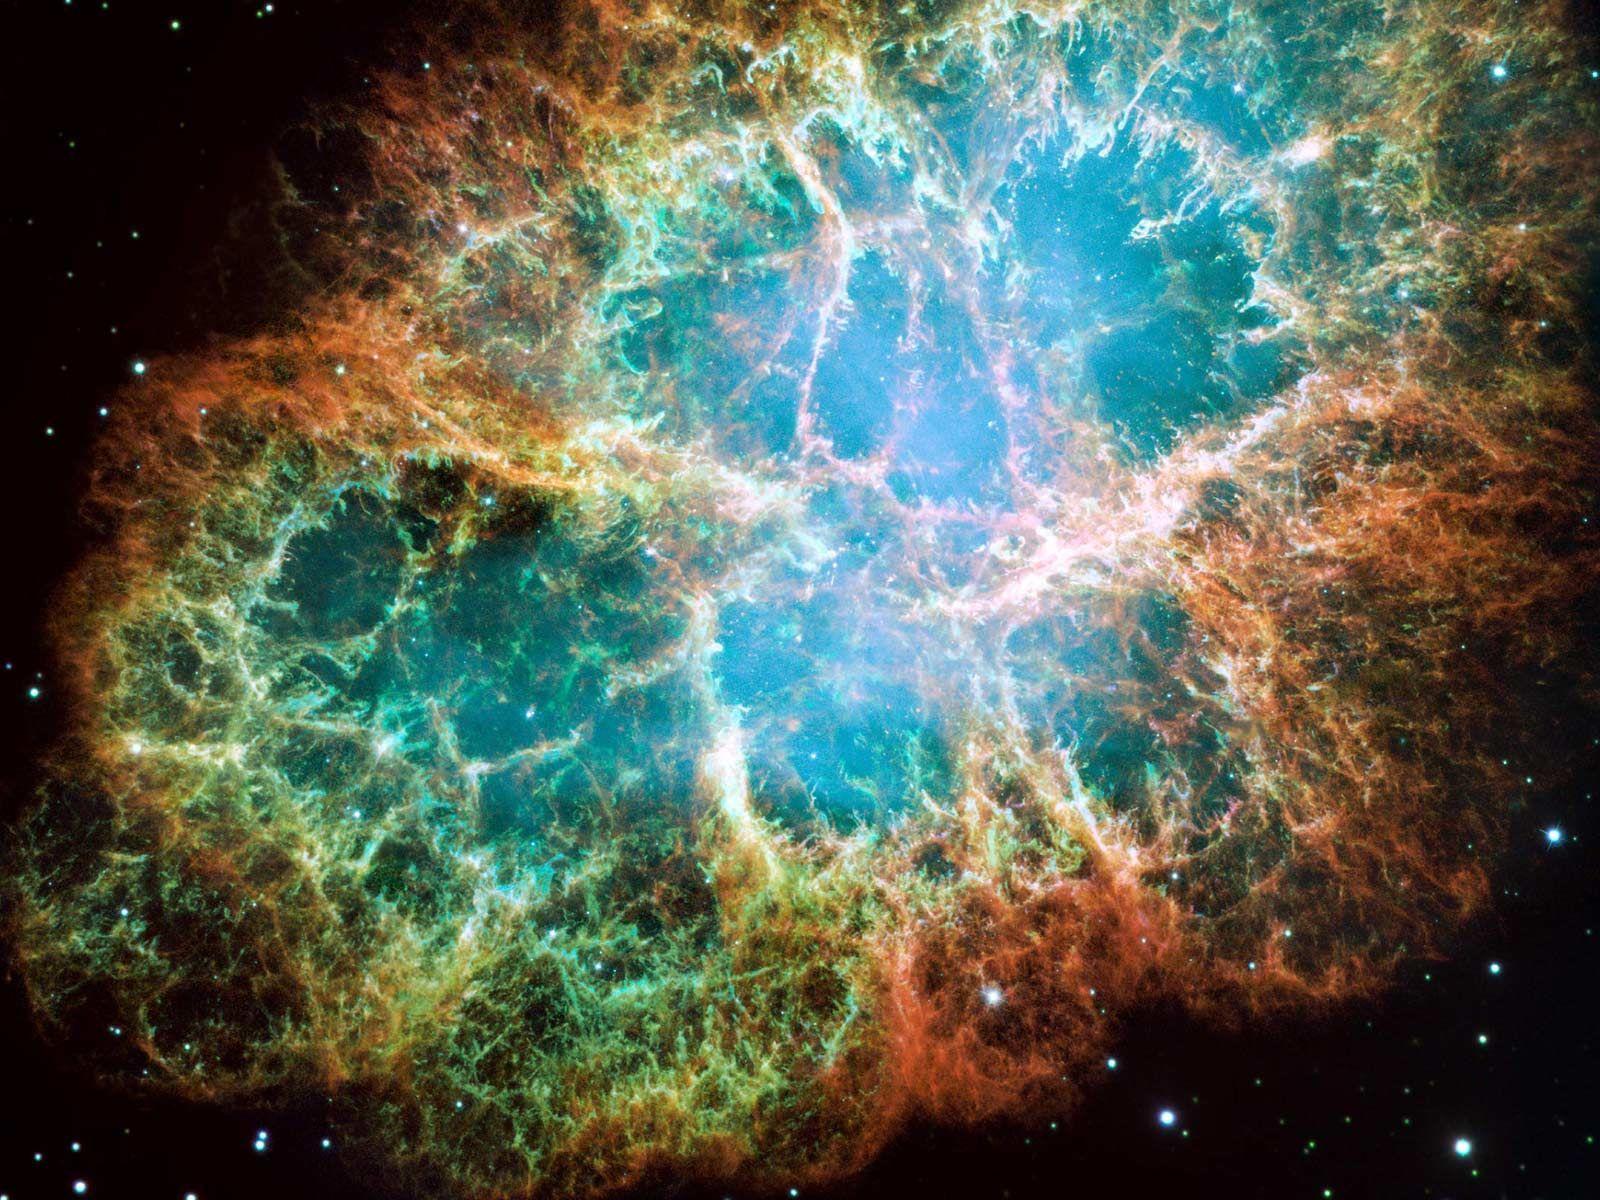 Space: Supernova, created by ii=Saadhu=ii, picture nr. 42441